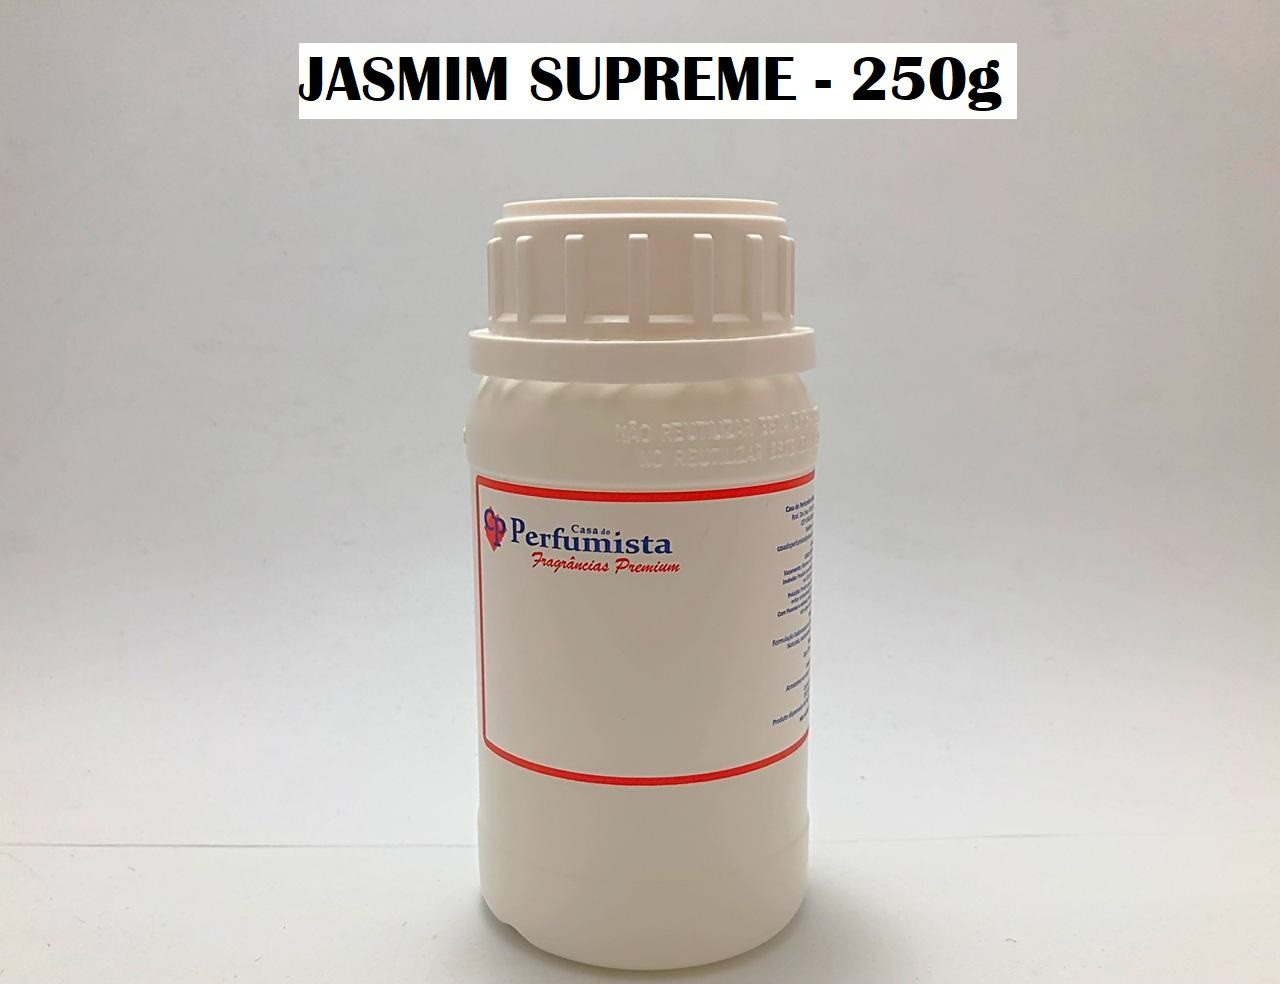 JASMIM SUPREME - 250g